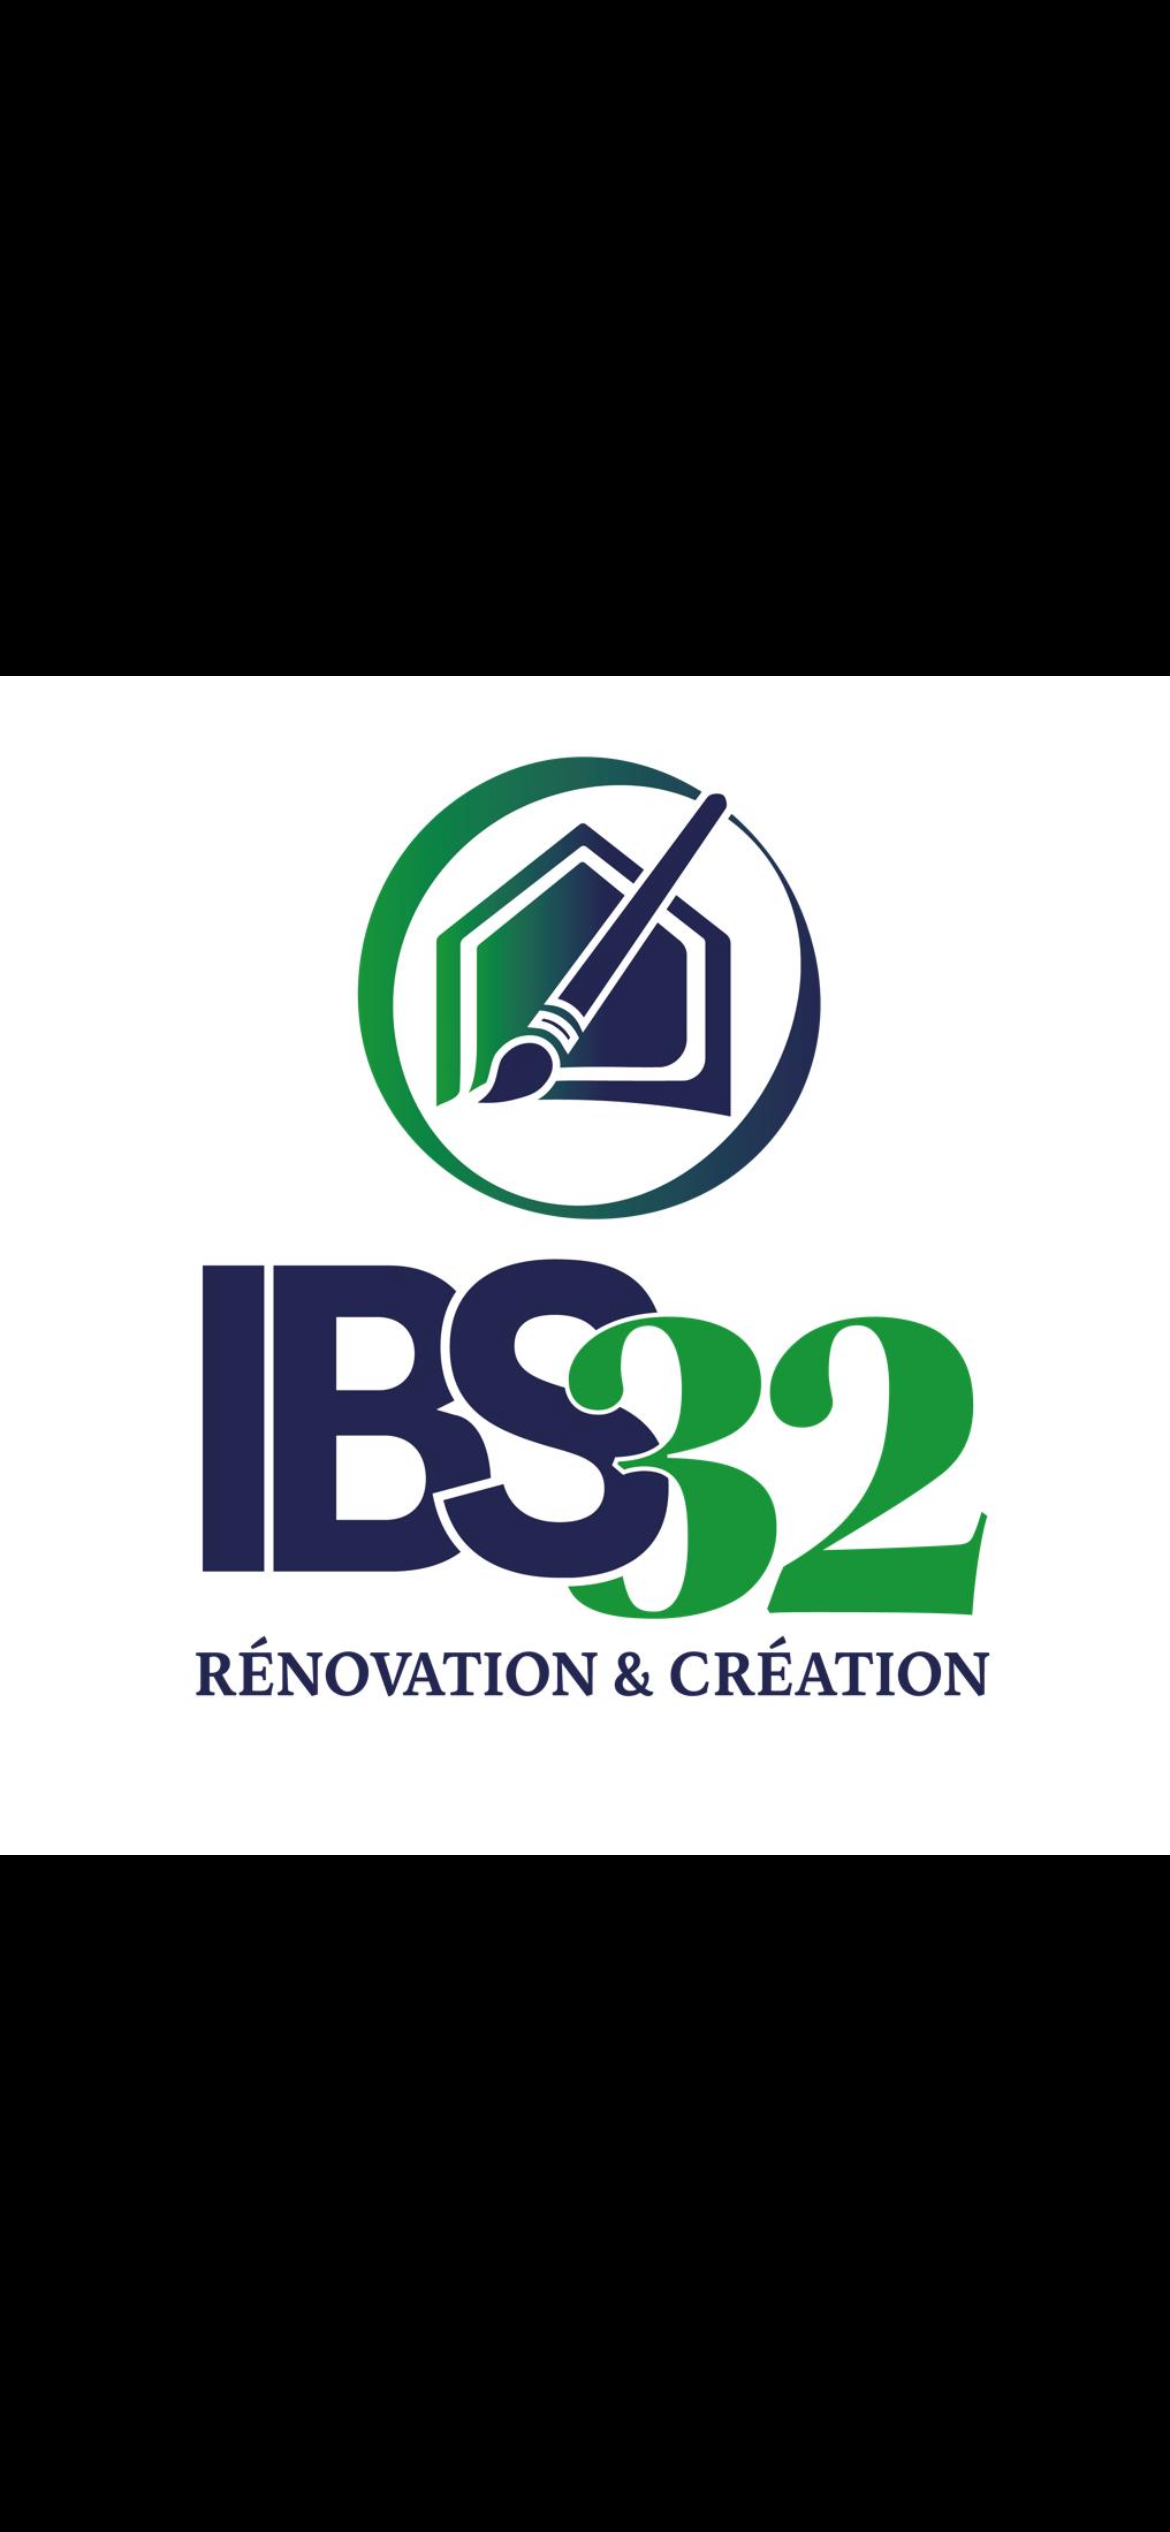 Ingrid Bunel Solutions Ibs32